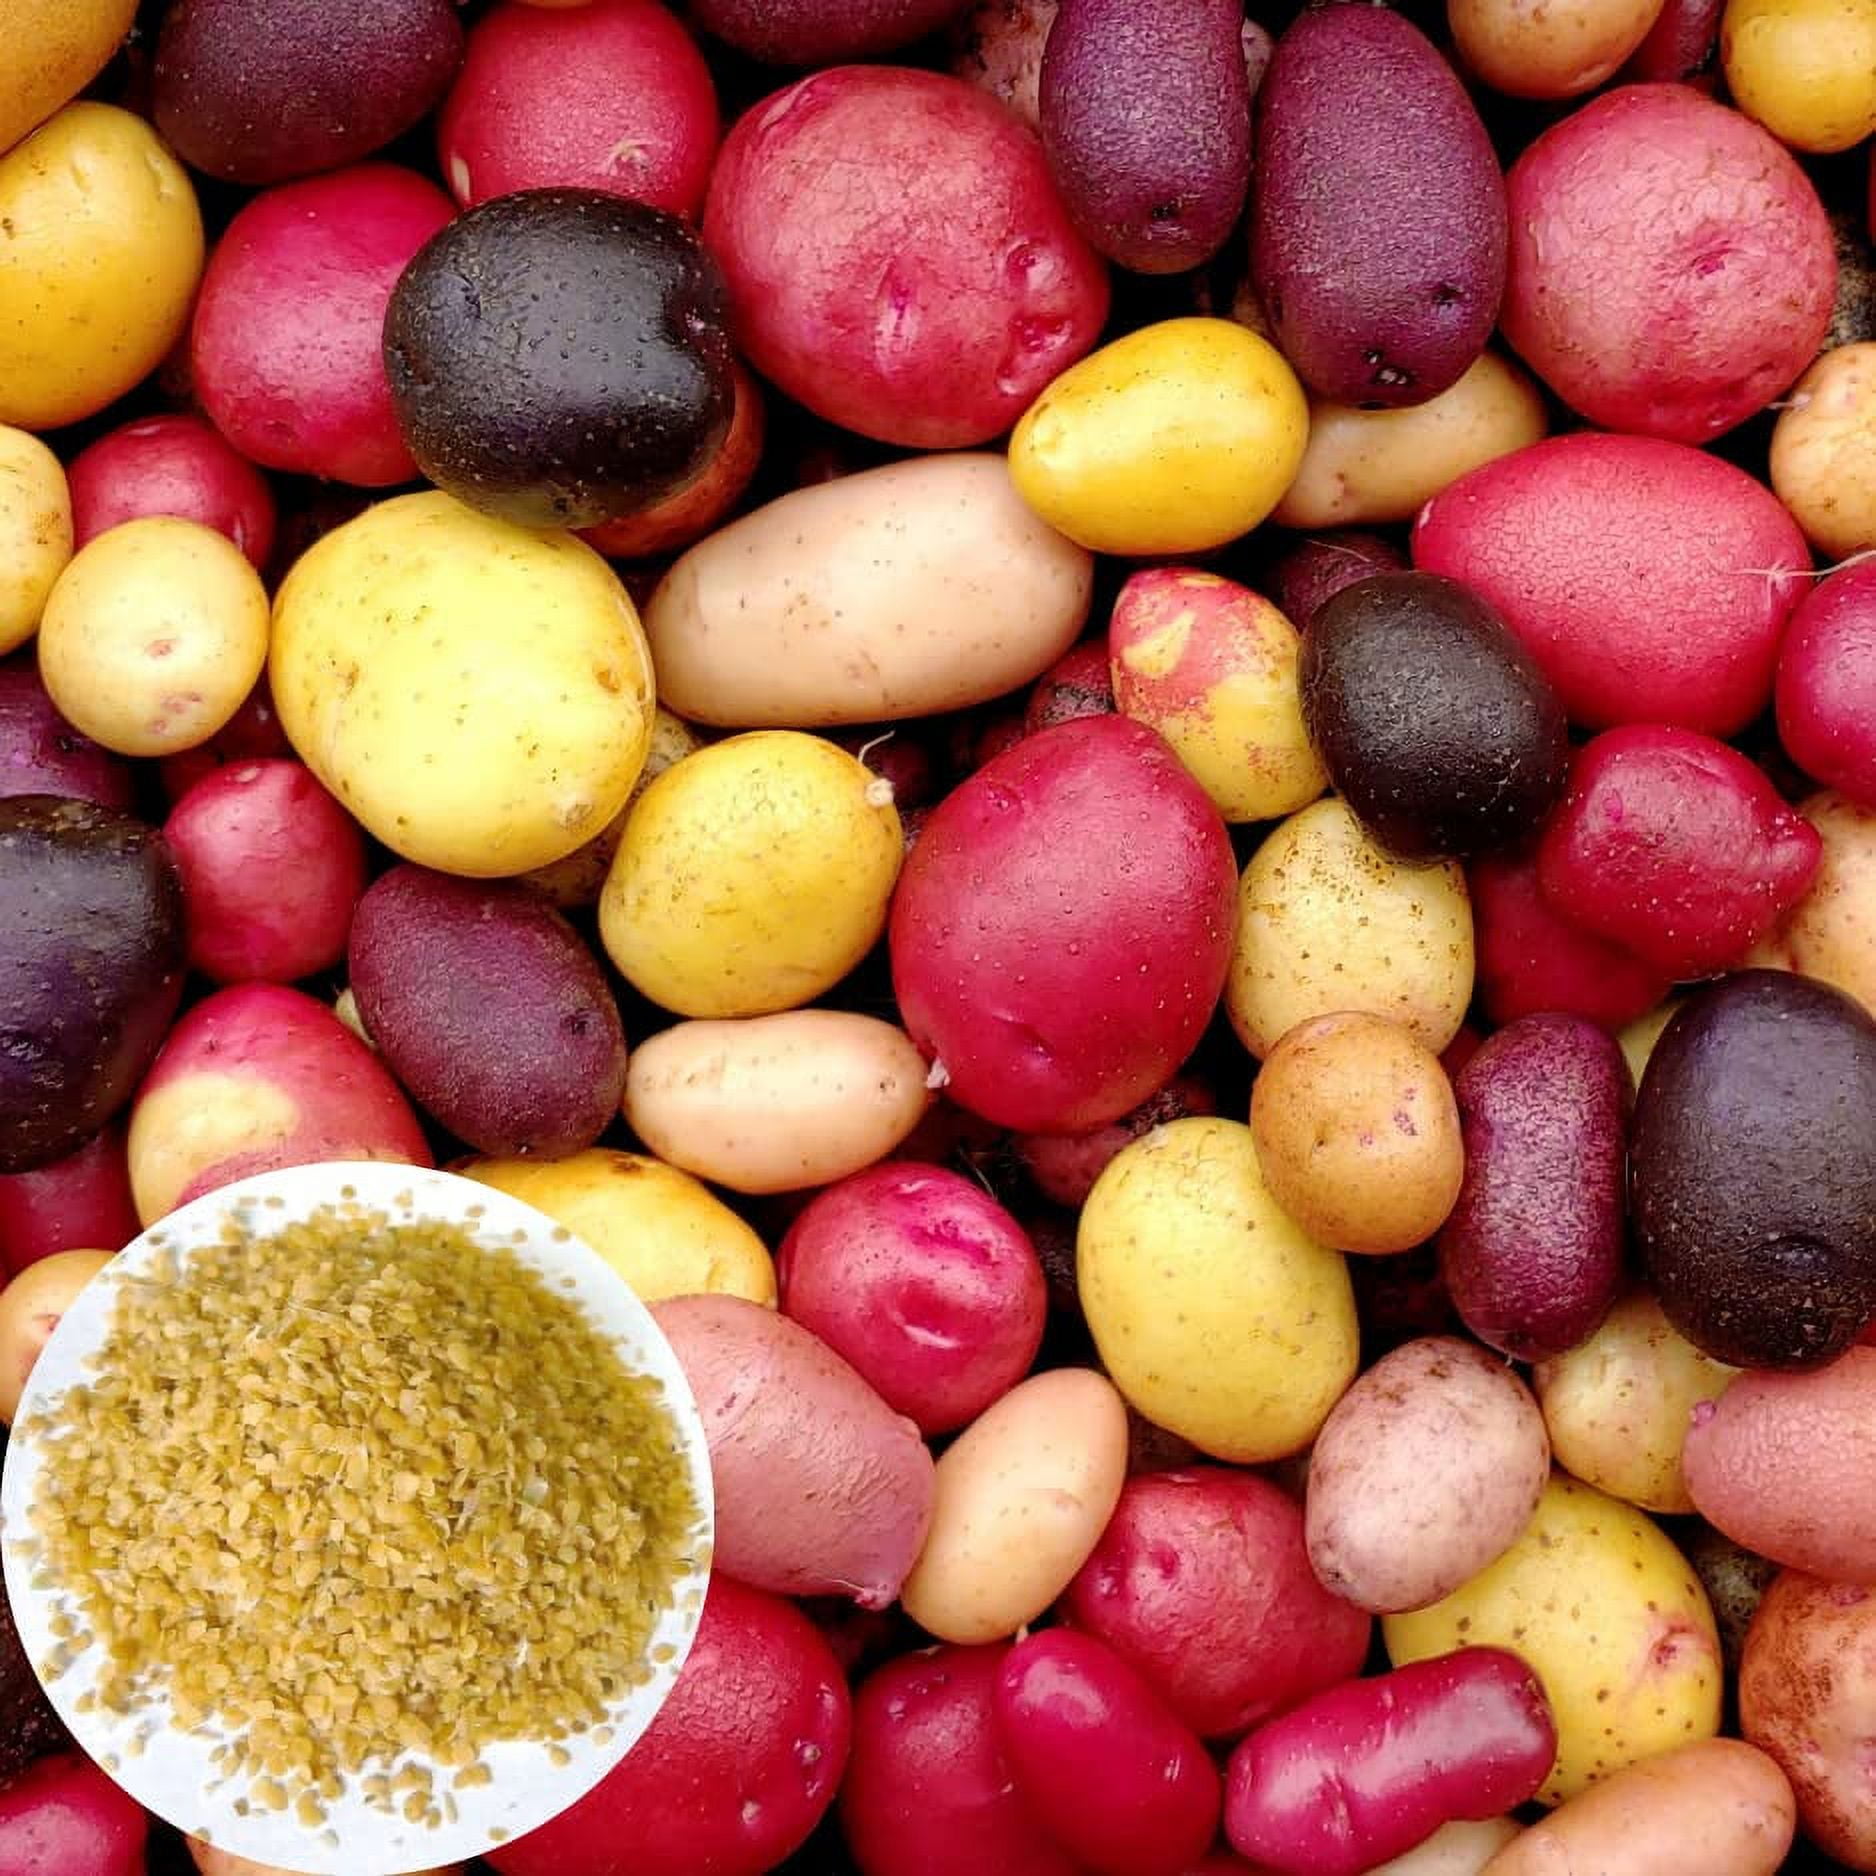 Mixed Color CM31 Potato Seeds for Planting Outdoors, 60 True Potato ...